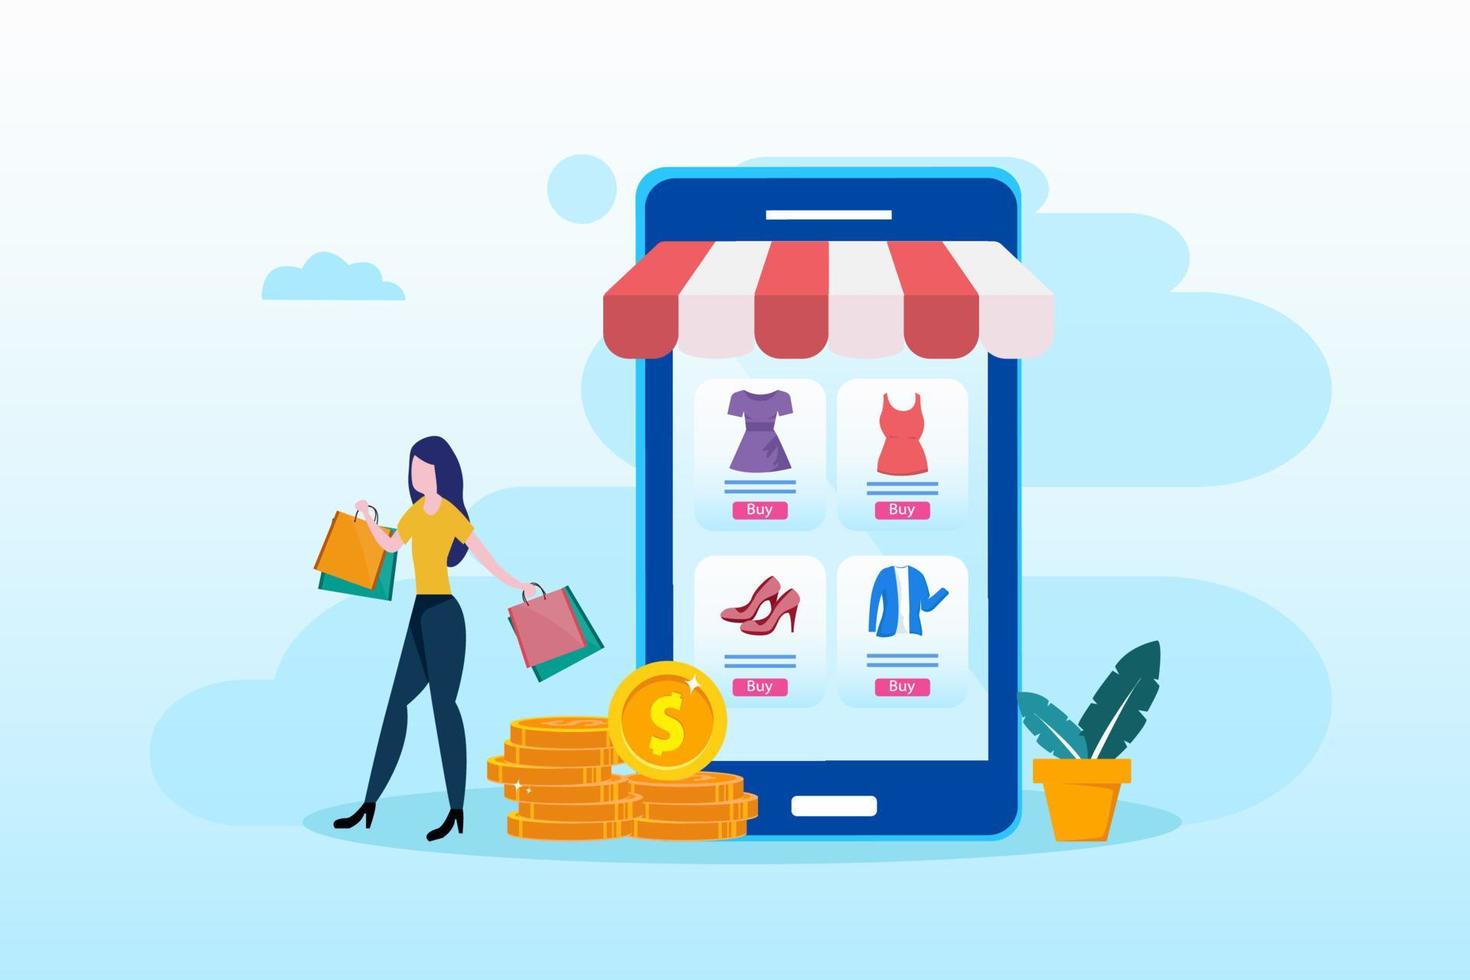 sconti, illustrazione vettoriale di vendita. negozio online nell'applicazione mobile dello smartphone. le persone minuscole scelgono beni a prezzi bassi nei loro gadget.